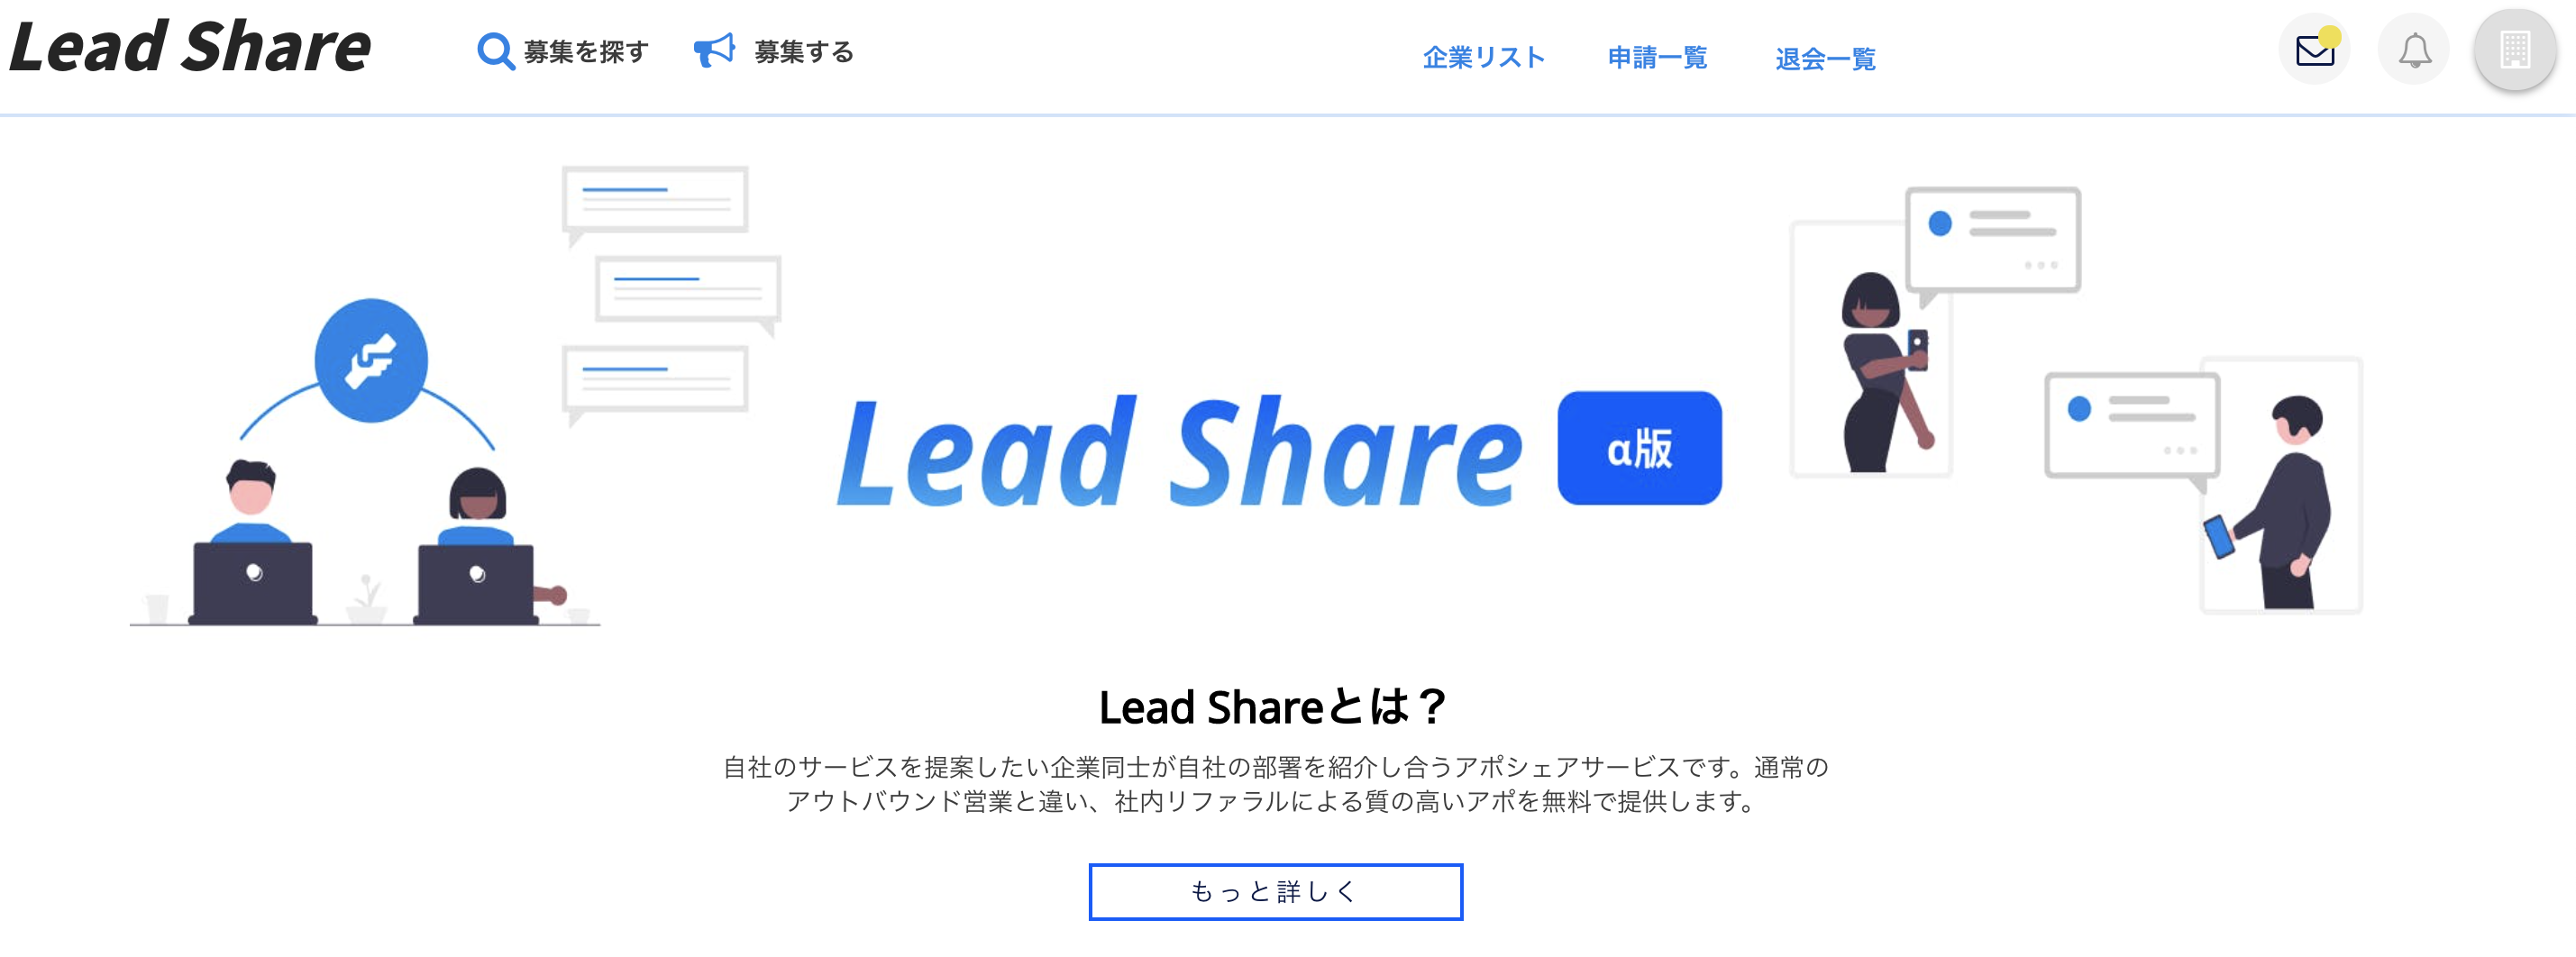 自社のサービスを提案したい企業同士をマッチング 相互営業提案を実現するアポシェアリングサービス Lead Share のa版の提供開始 株式会社devueのプレスリリース